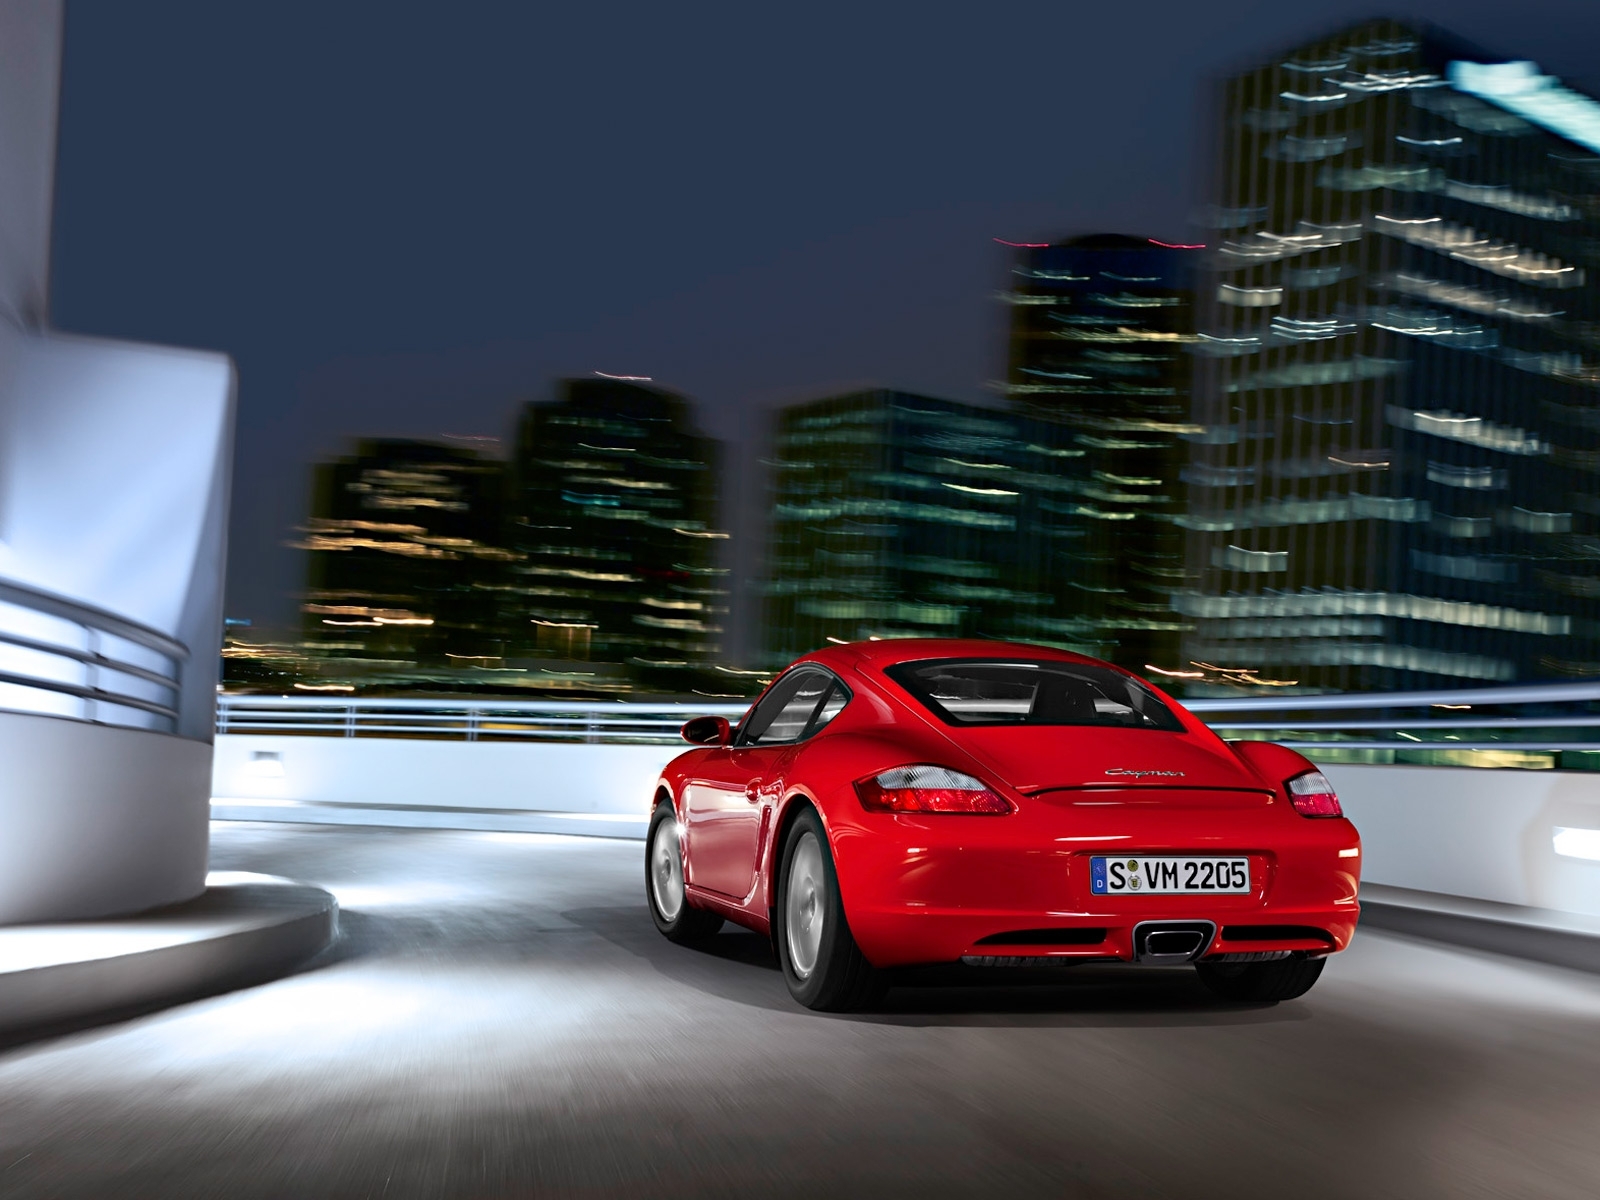 Descarga gratuita de fondo de pantalla para móvil de Transporte, Automóvil, Porsche.